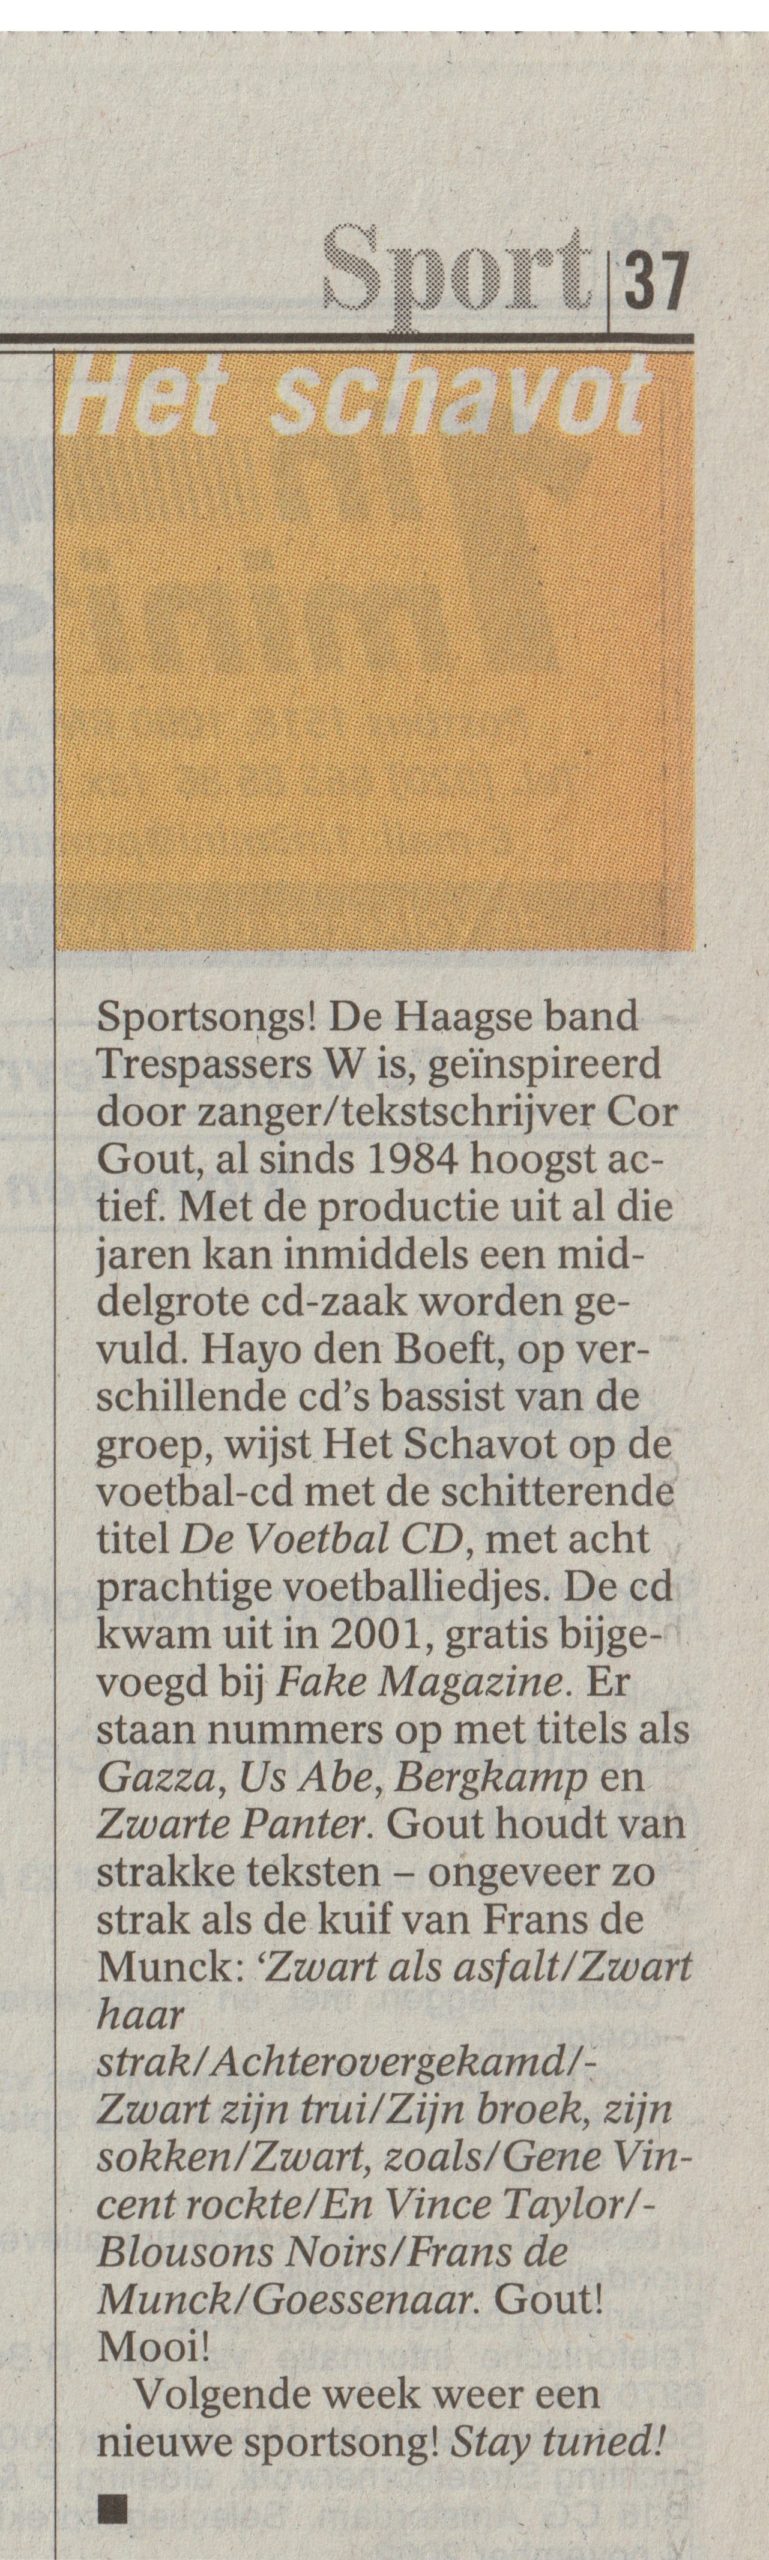 Het schavot, Bert Wagendorp, Volkskrant 2-11-2002